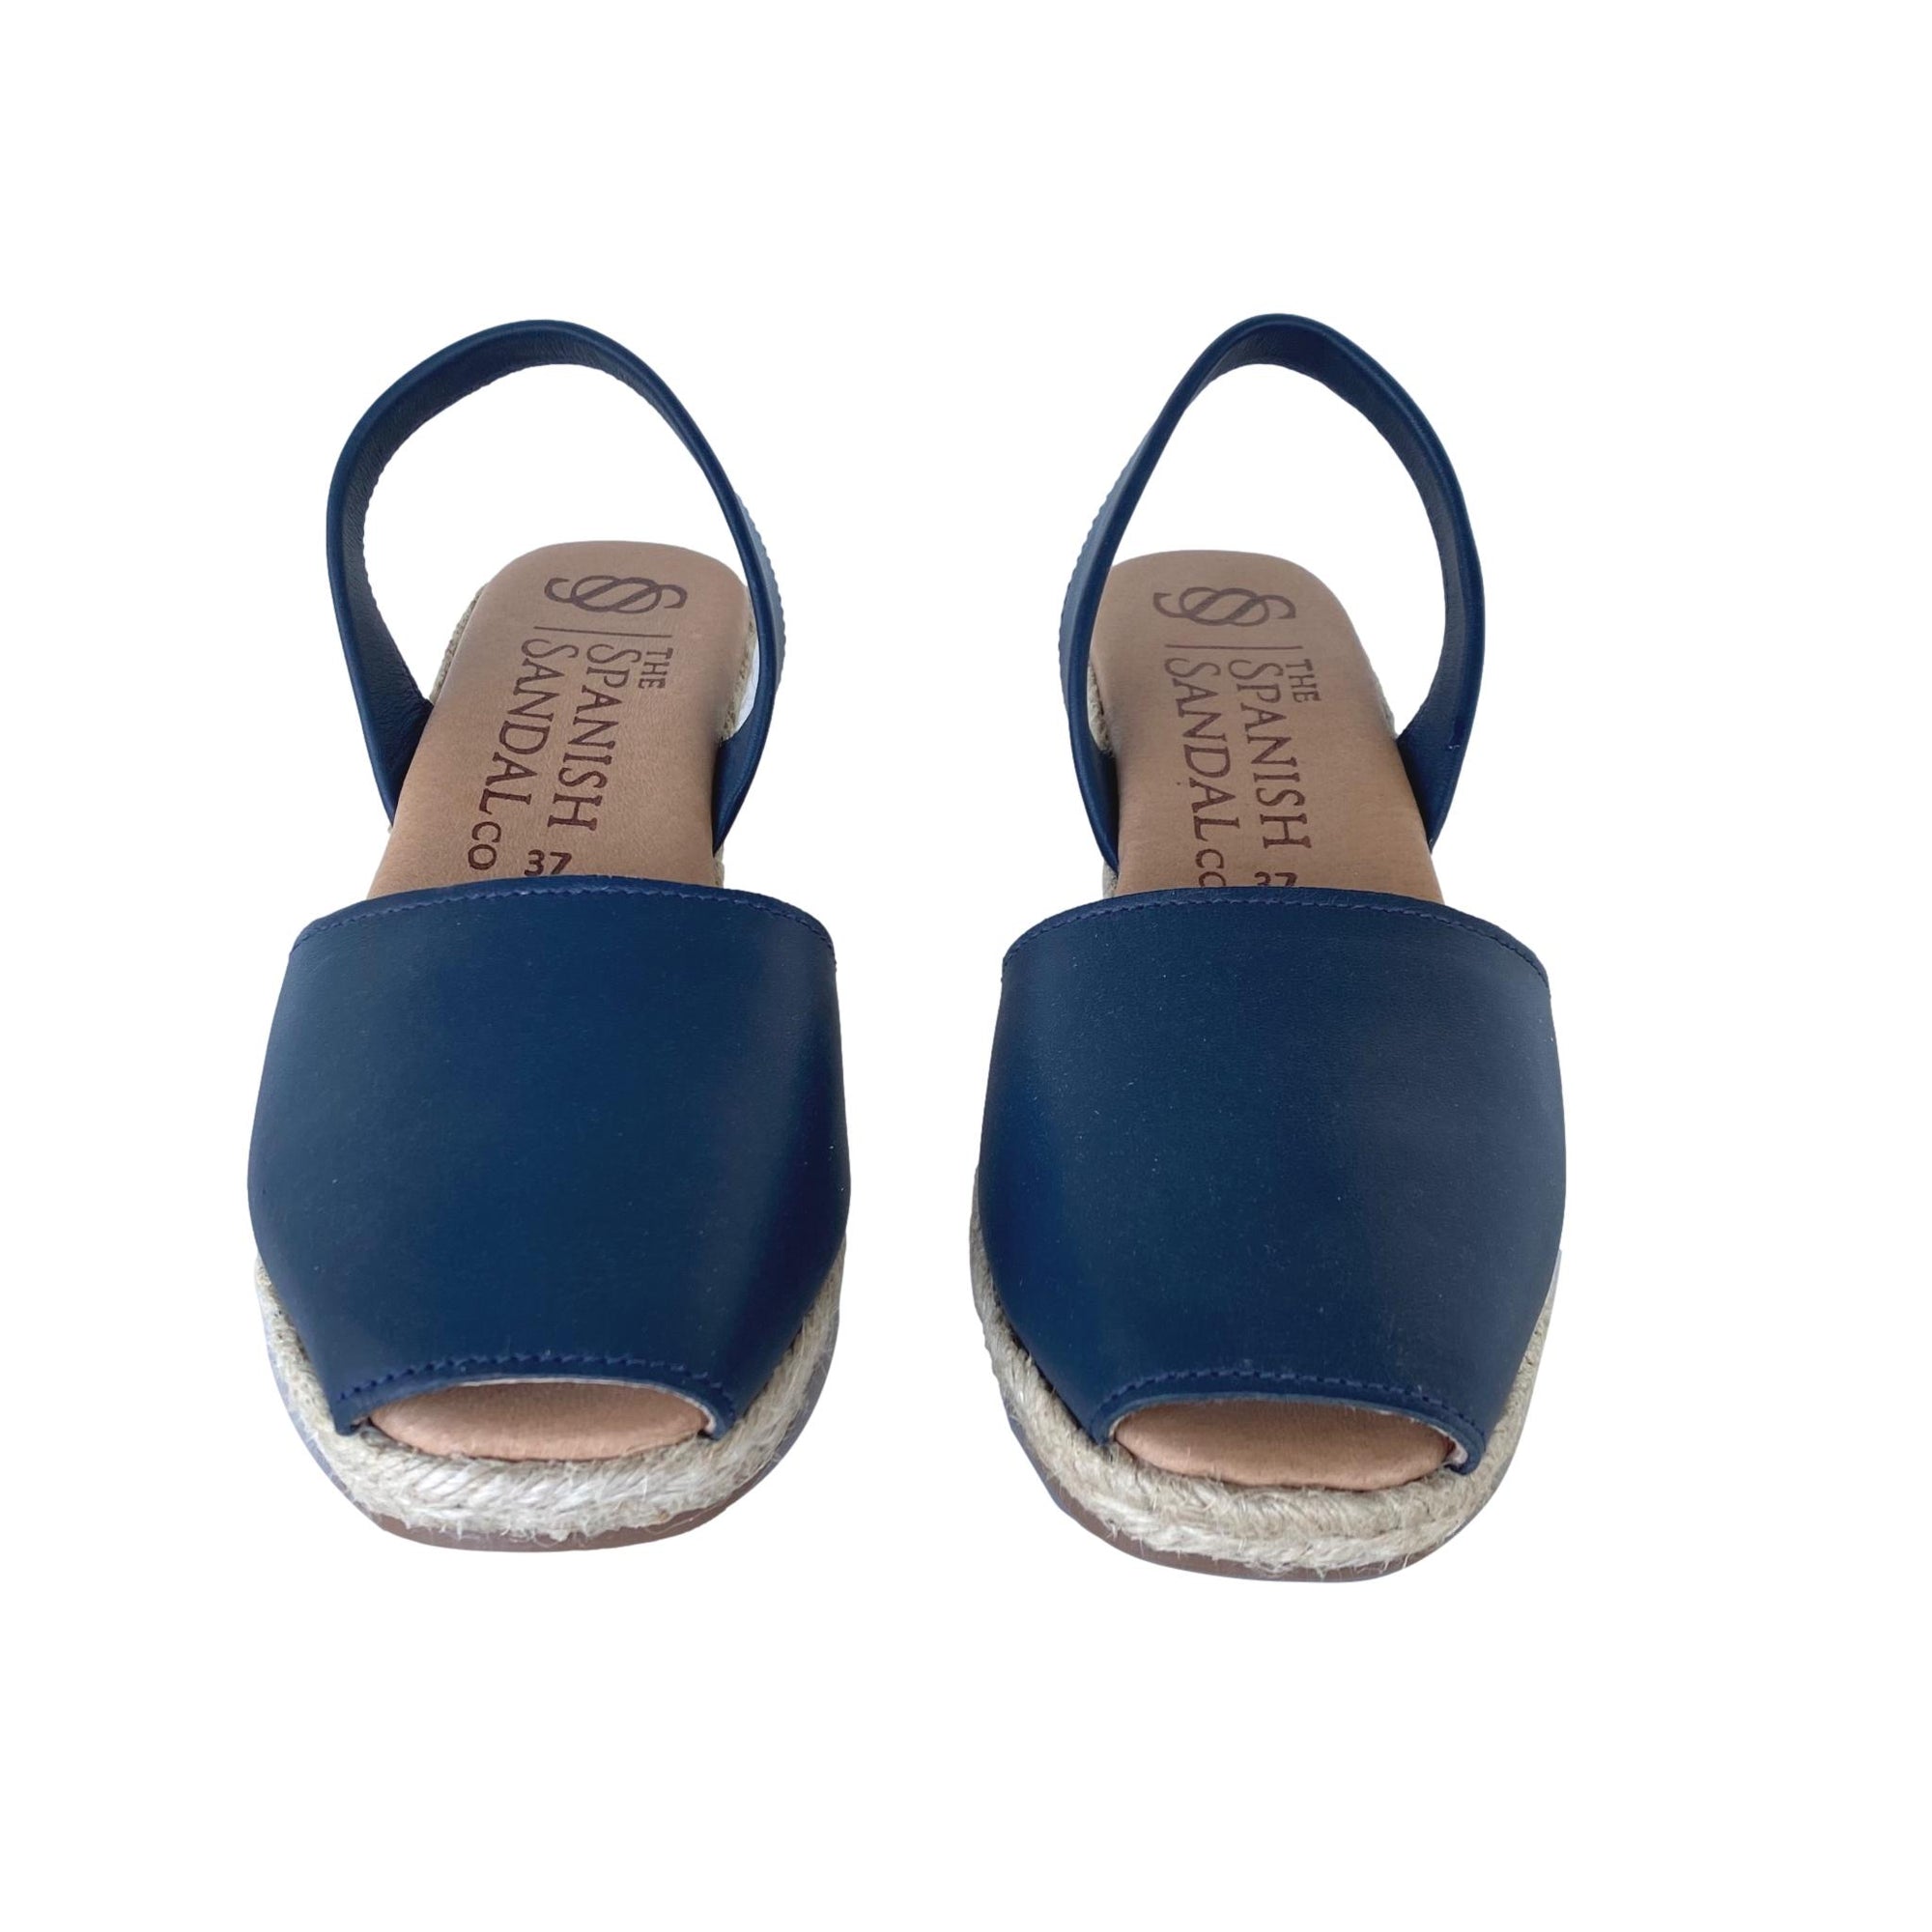 Navy blue espadrille wedge sandals